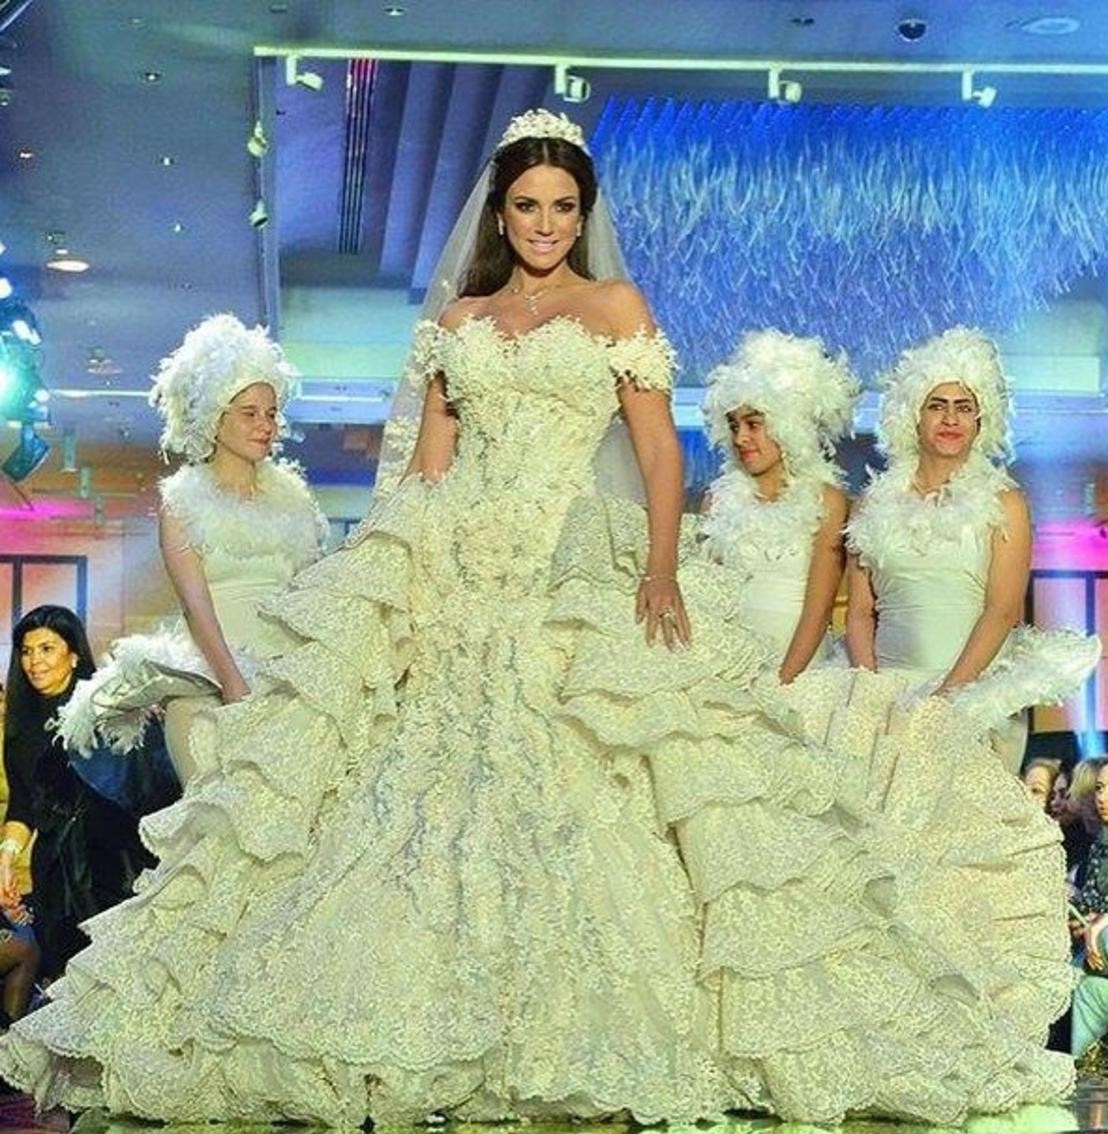 صور-درة-التونسية-ملكة-الثلج-في-أجمل-فستان-زفاف-بتوقيع-هاني-البحيري-1165745